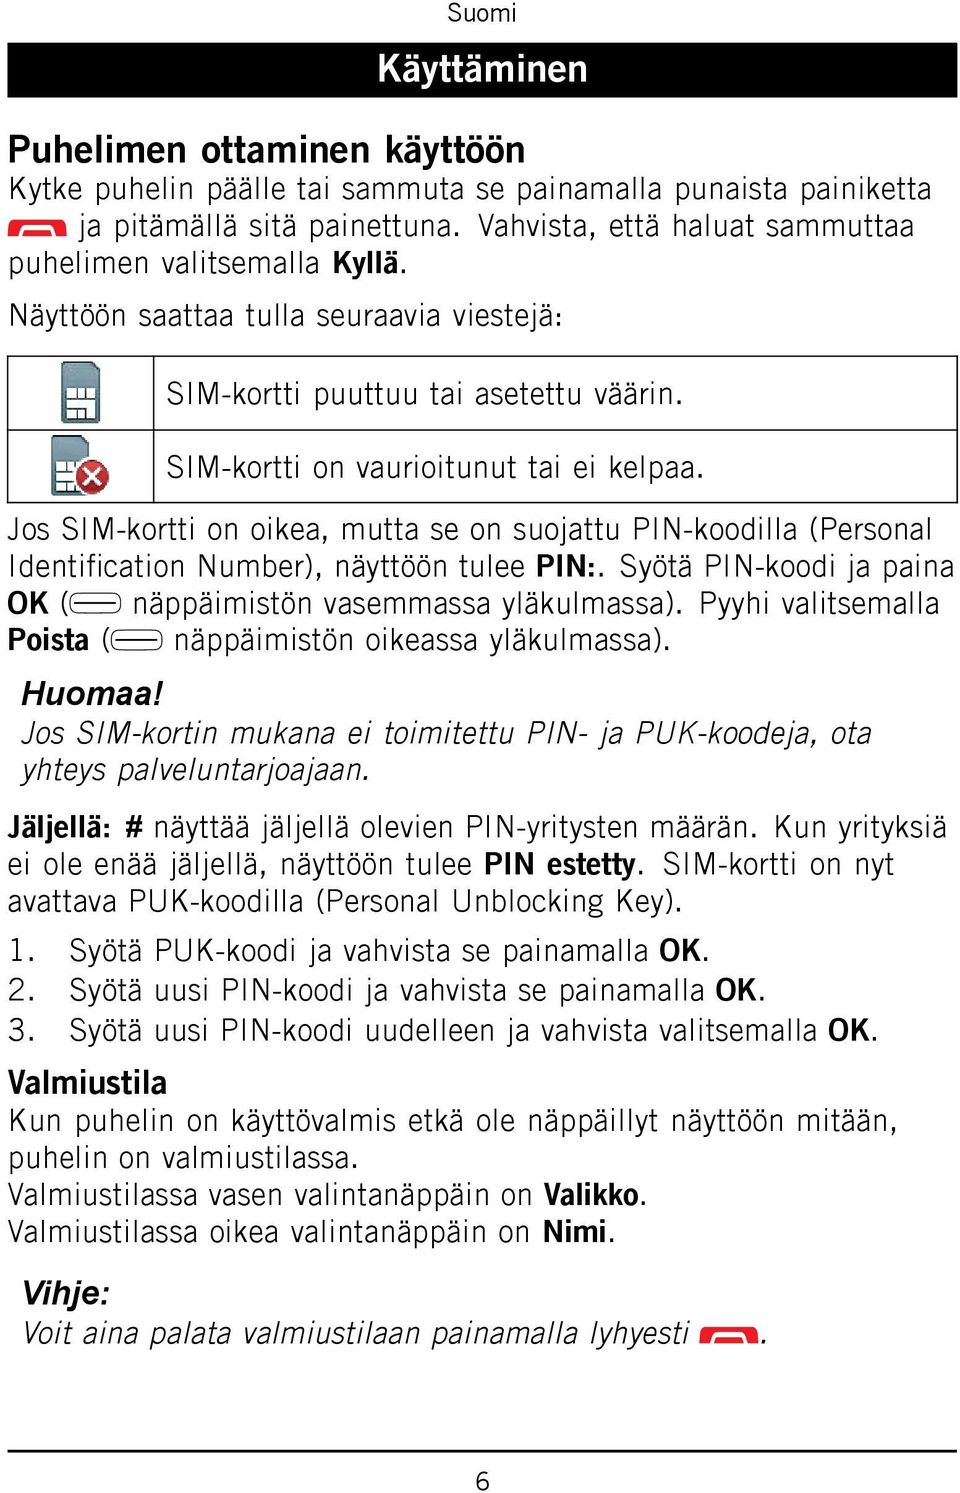 Jos SIM-kortti on oikea, mutta se on suojattu PIN-koodilla (Personal Identification Number), näyttöön tulee PIN:. Syötä PIN-koodi ja paina OK ( näppäimistön vasemmassa yläkulmassa).